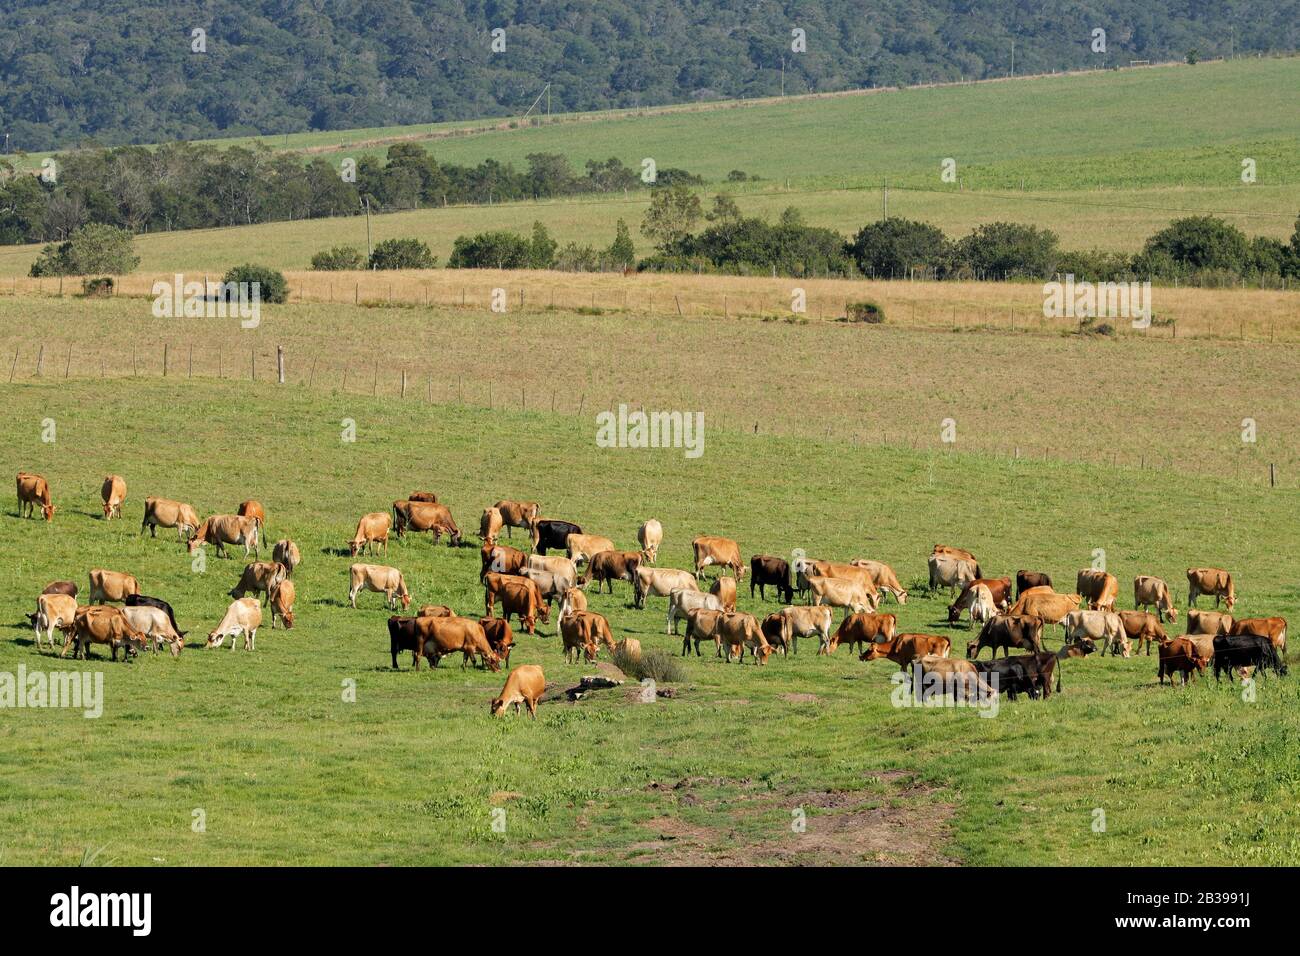 Les vaches laitières paissent sur un pâturage vert luxuriant d'une ferme rurale, Afrique du Sud Banque D'Images